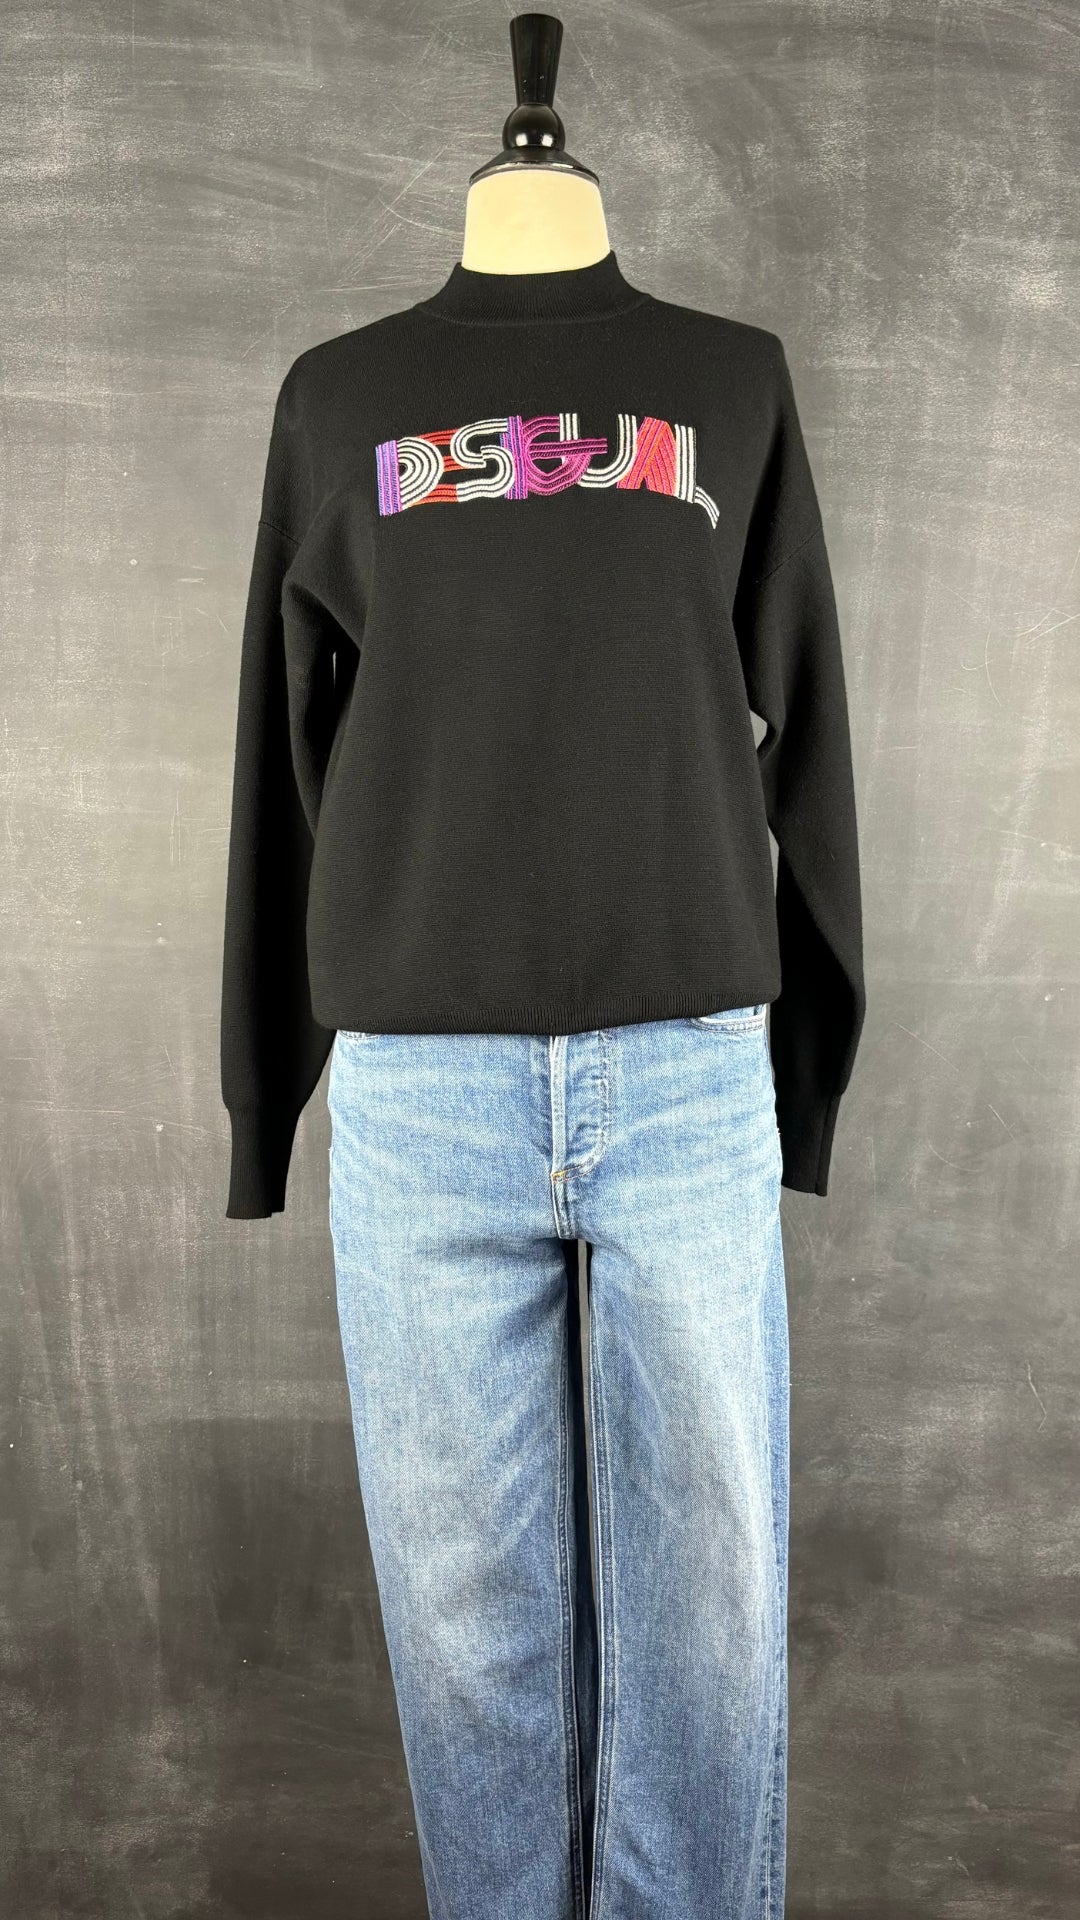 Jeans droit taille haute modèle Arlo Denim Forum, taille 26. Vue de l'agencement avec le tricot noir Desigual.